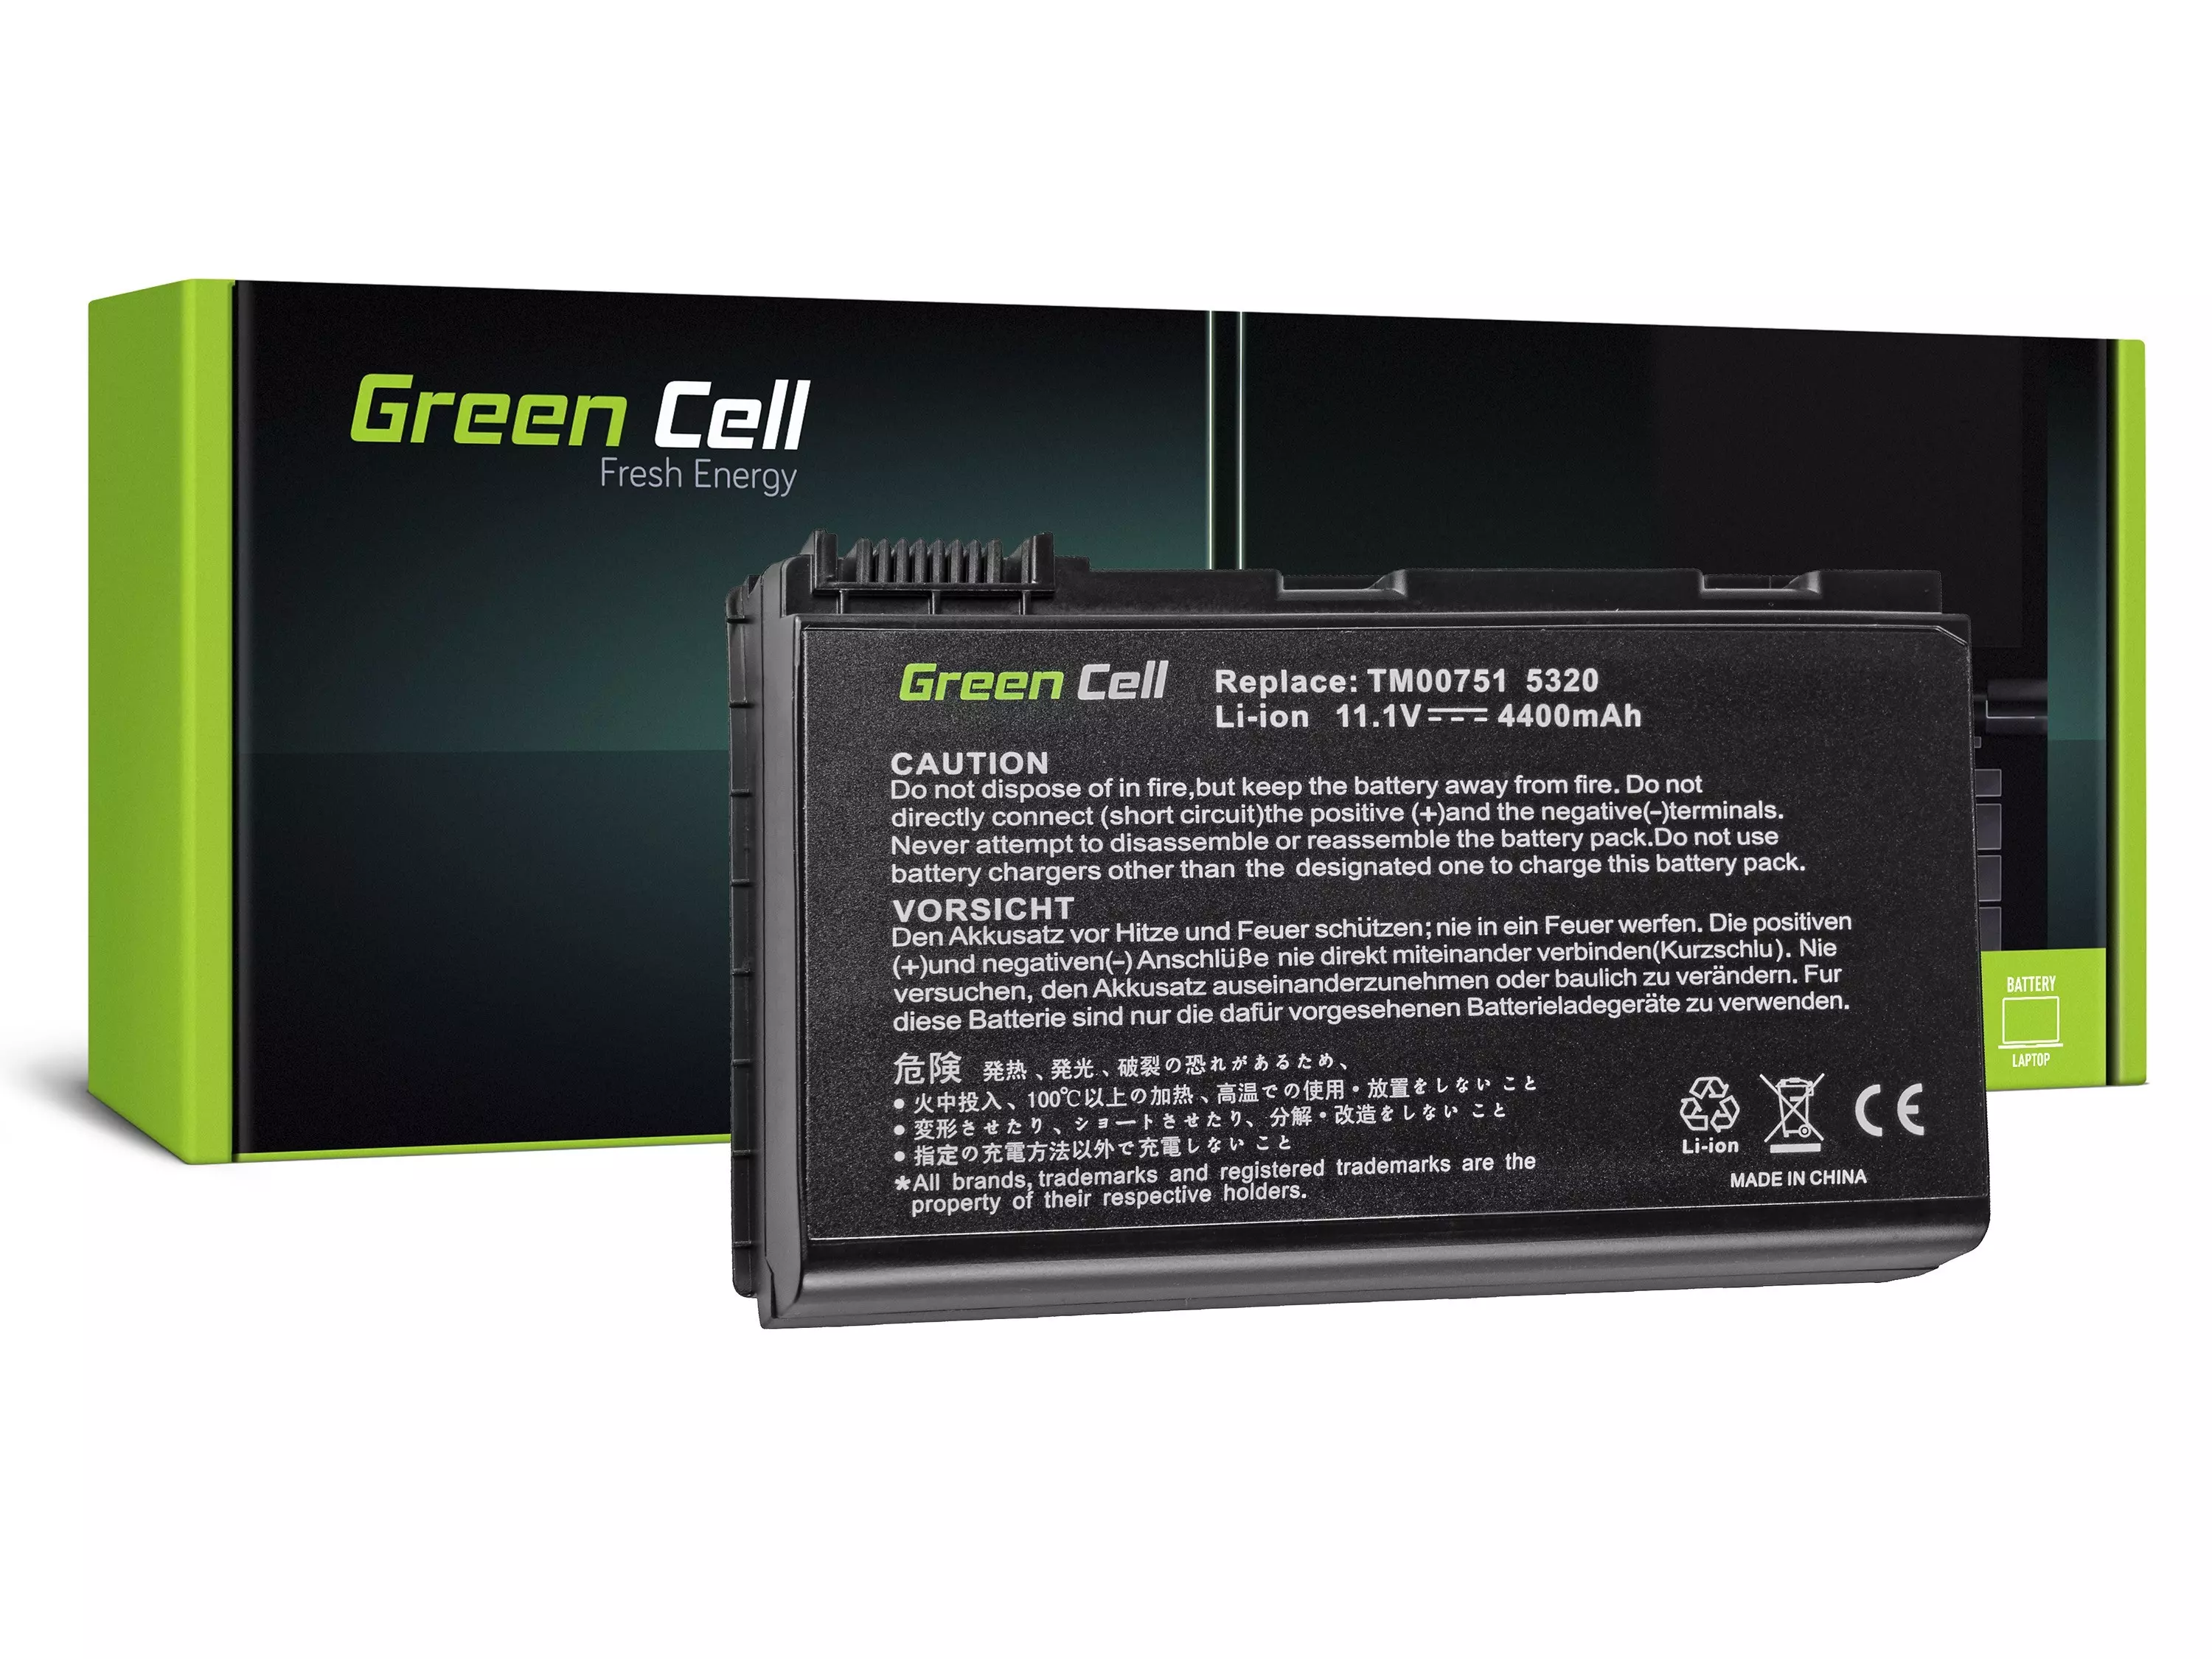 Green Cell Battery for Acer TravelMate 5220 5520 5720 7520 7720 / 11,1V 4400mAh